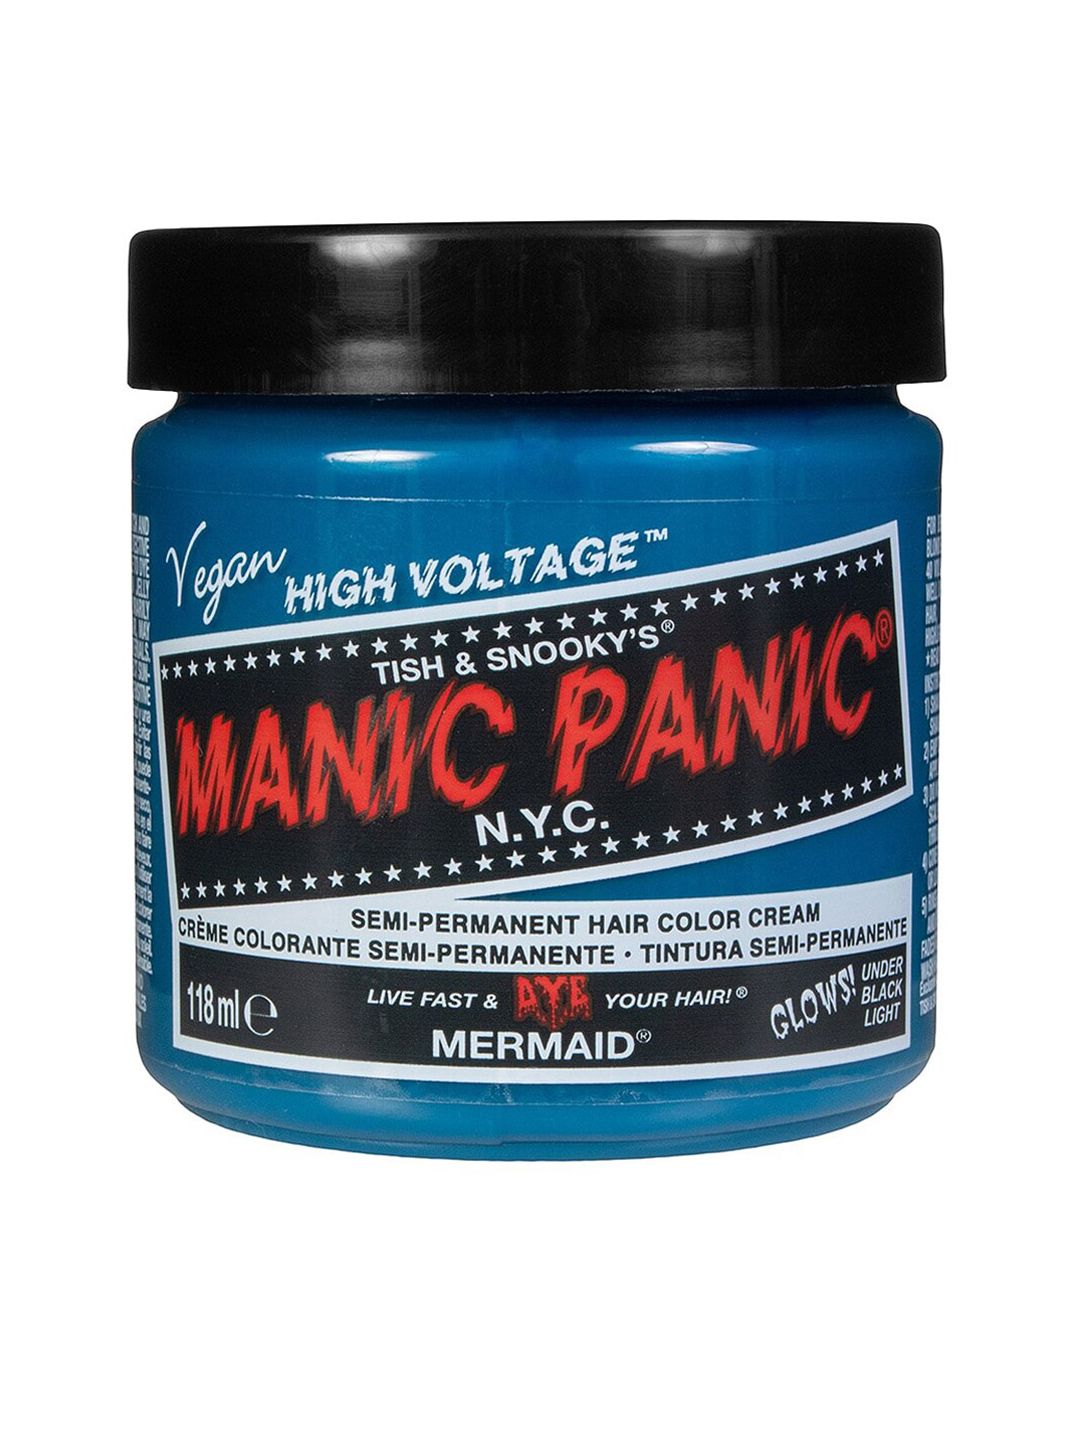 MANIC PANIC Classic High Voltage Semi-Permanent Hair Colour Cream - Mermaid Price in India